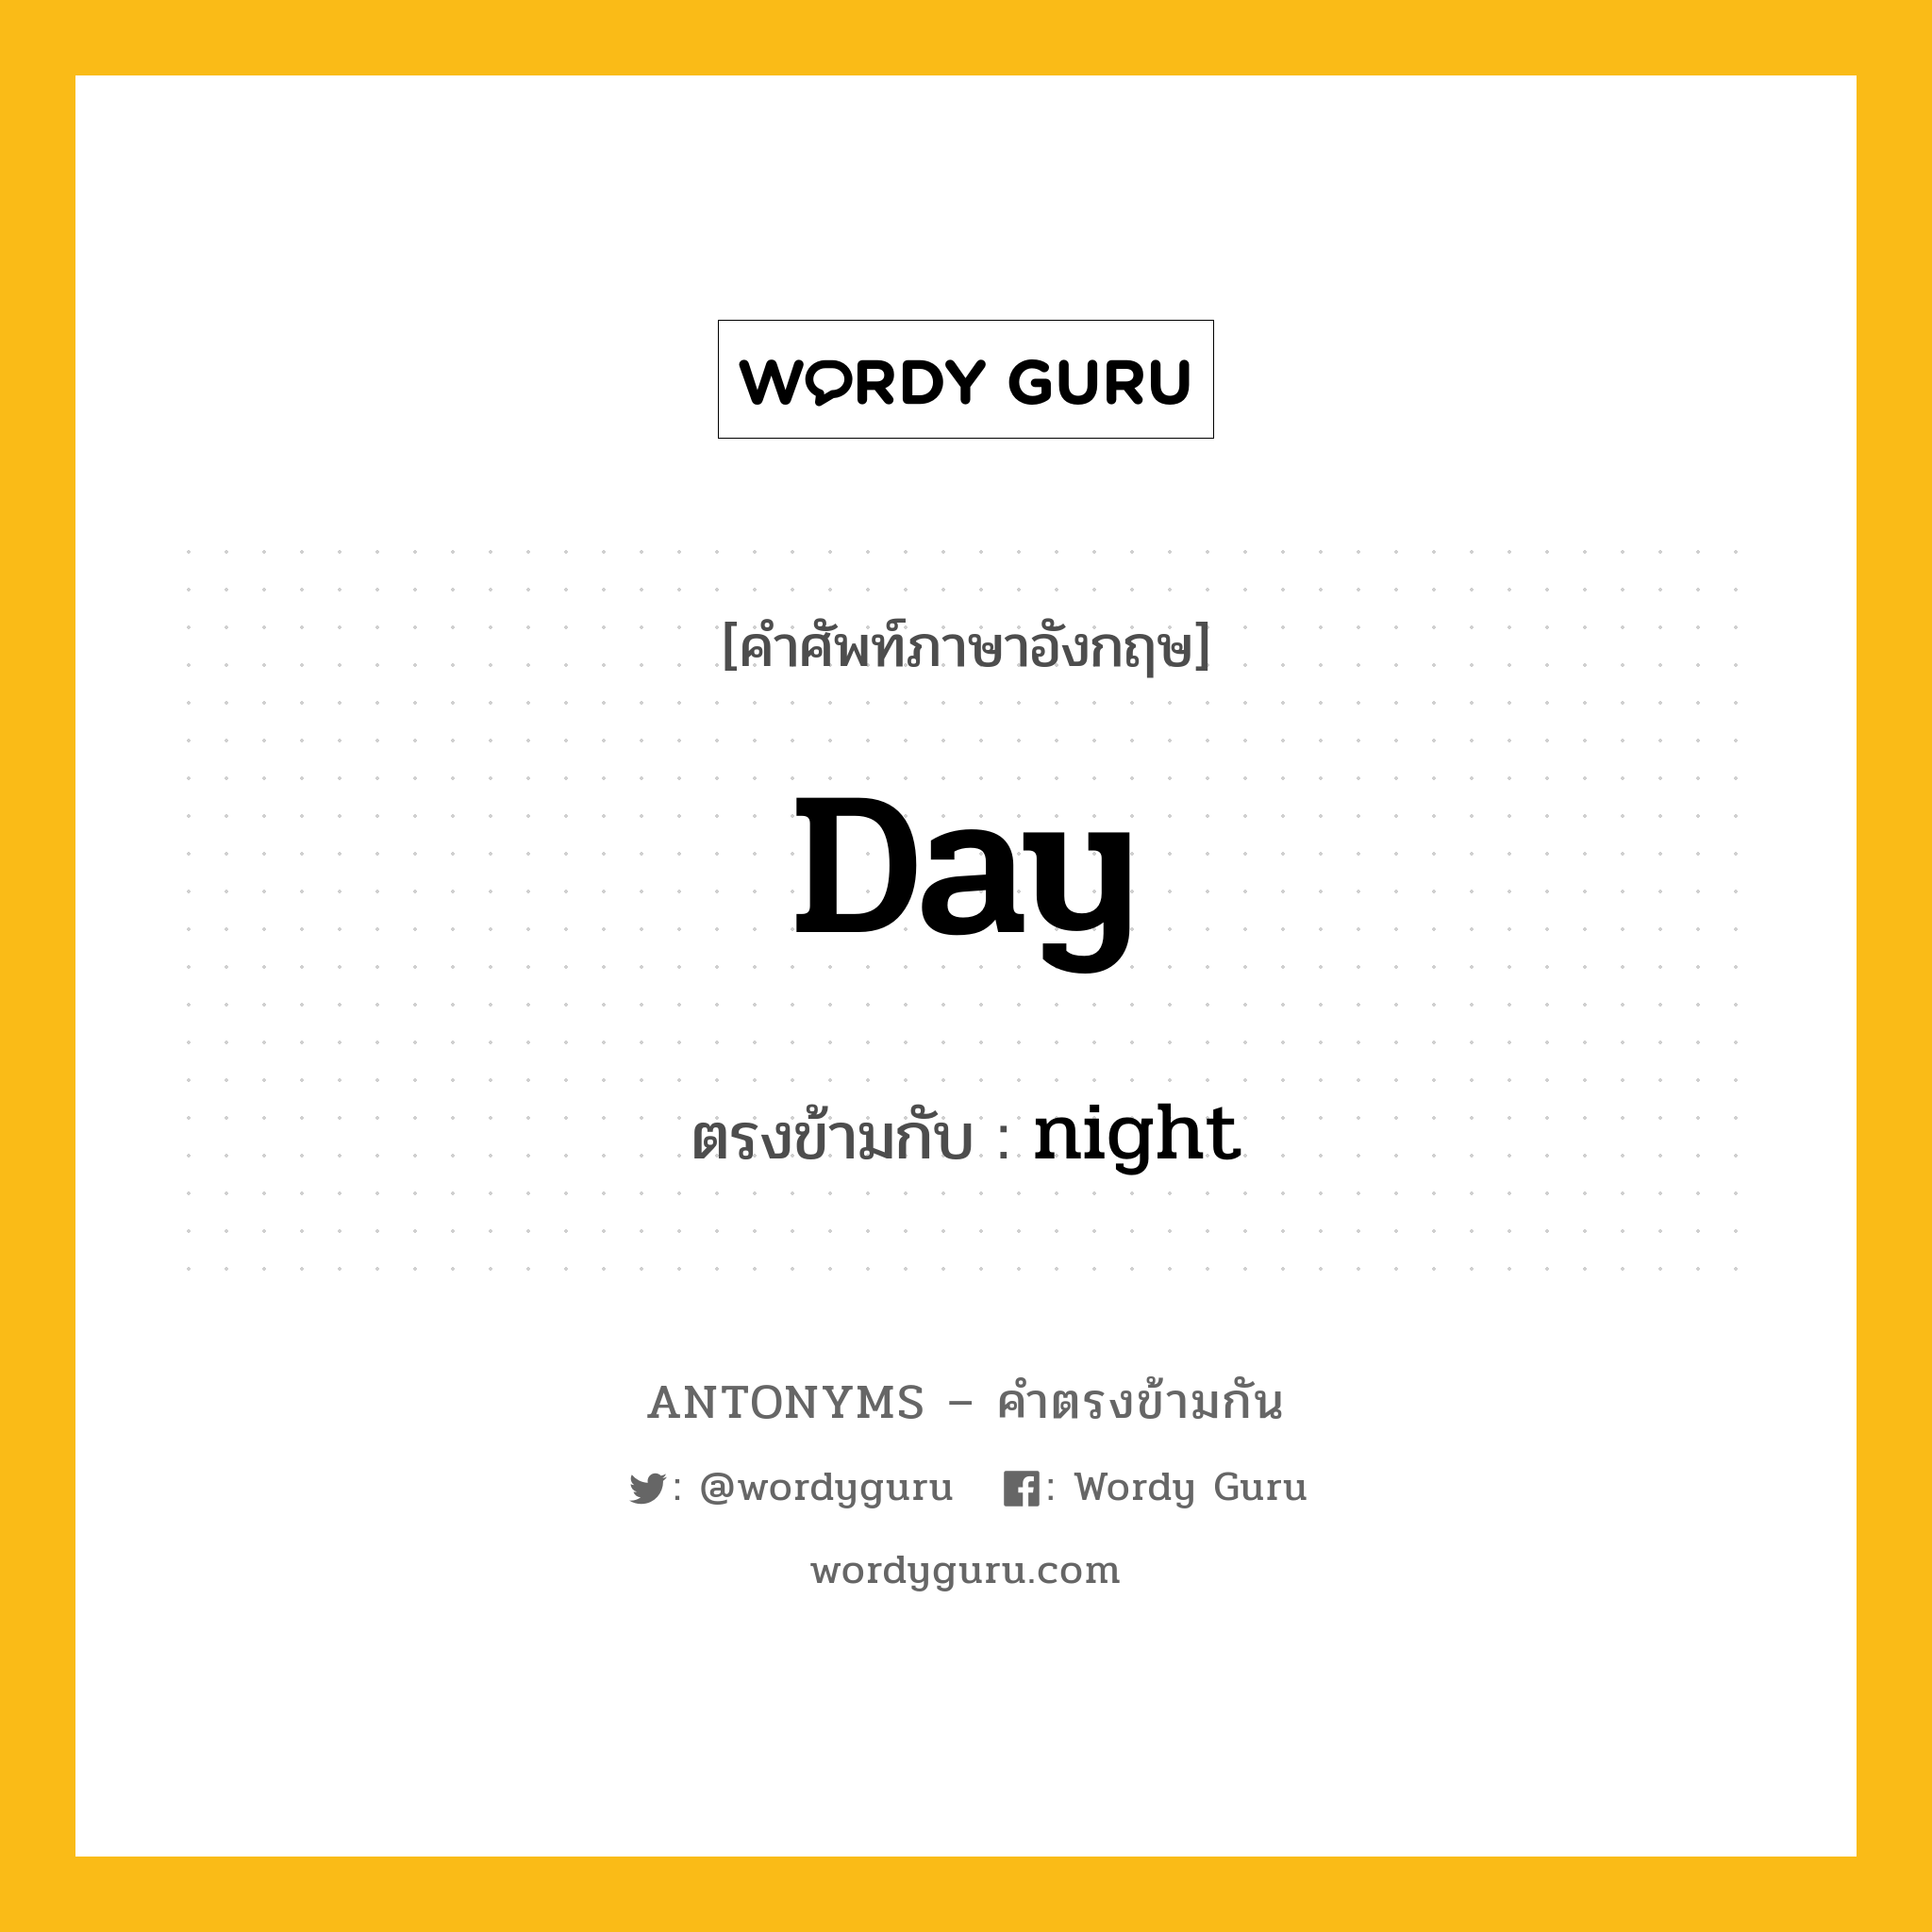 day เป็นคำตรงข้ามกับคำไหนบ้าง?, คำศัพท์ภาษาอังกฤษ day ตรงข้ามกับ night หมวด night